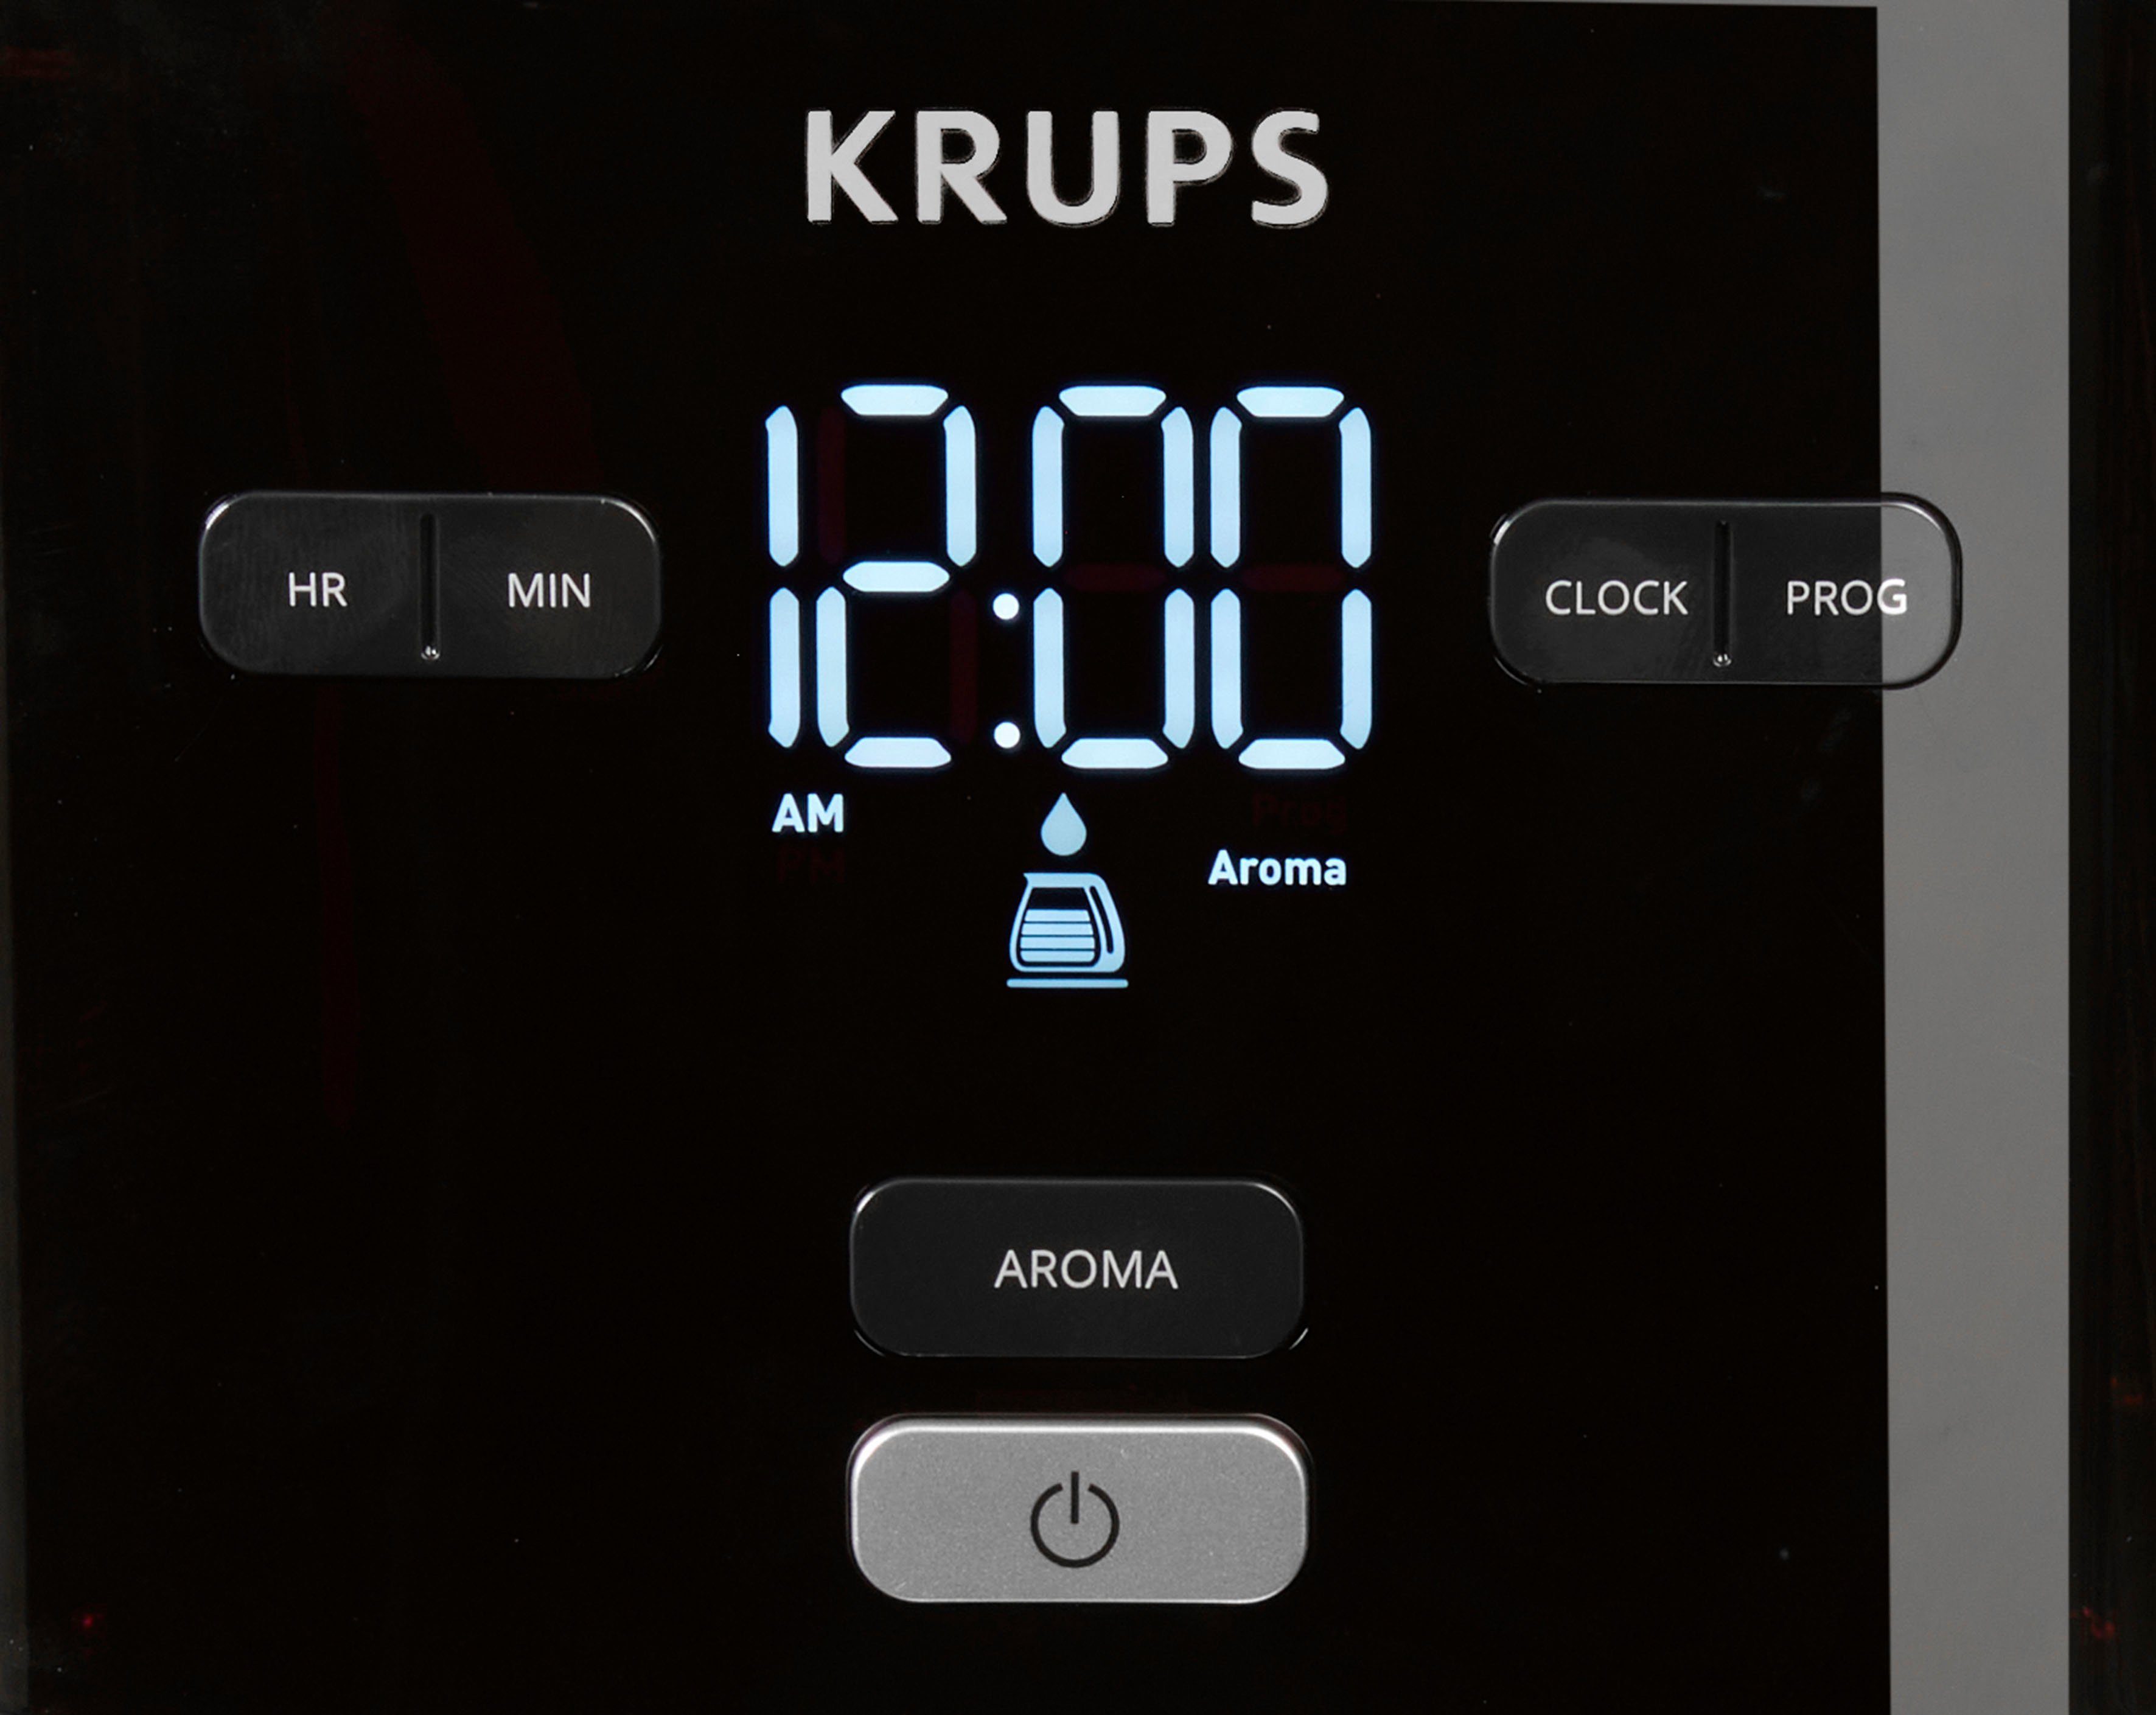 automatische 30 Light, Smart'n 1,25l 24-Std-Timer, Minuten nach KM6008 Filterkaffeemaschine Kaffeekanne, Krups Abschaltung